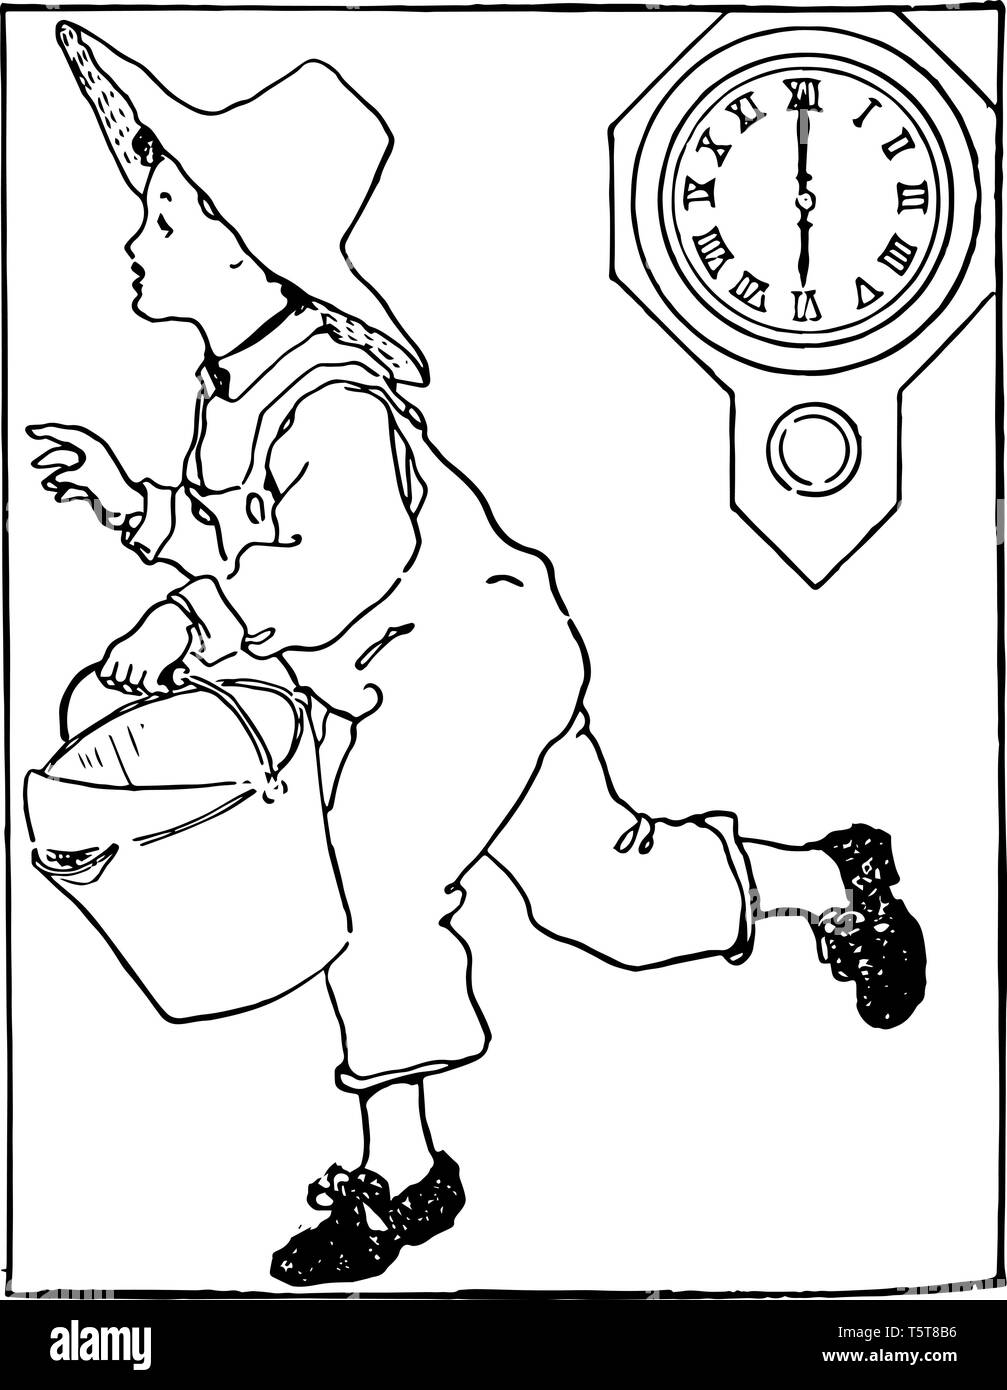 Un bambino è in esecuzione tenendo un cucchiaio nelle sue mani e indossando un cappello nella sua testa con orologio che mostra il tempo come 6:00, vintage disegno della linea o incisione di illu Illustrazione Vettoriale